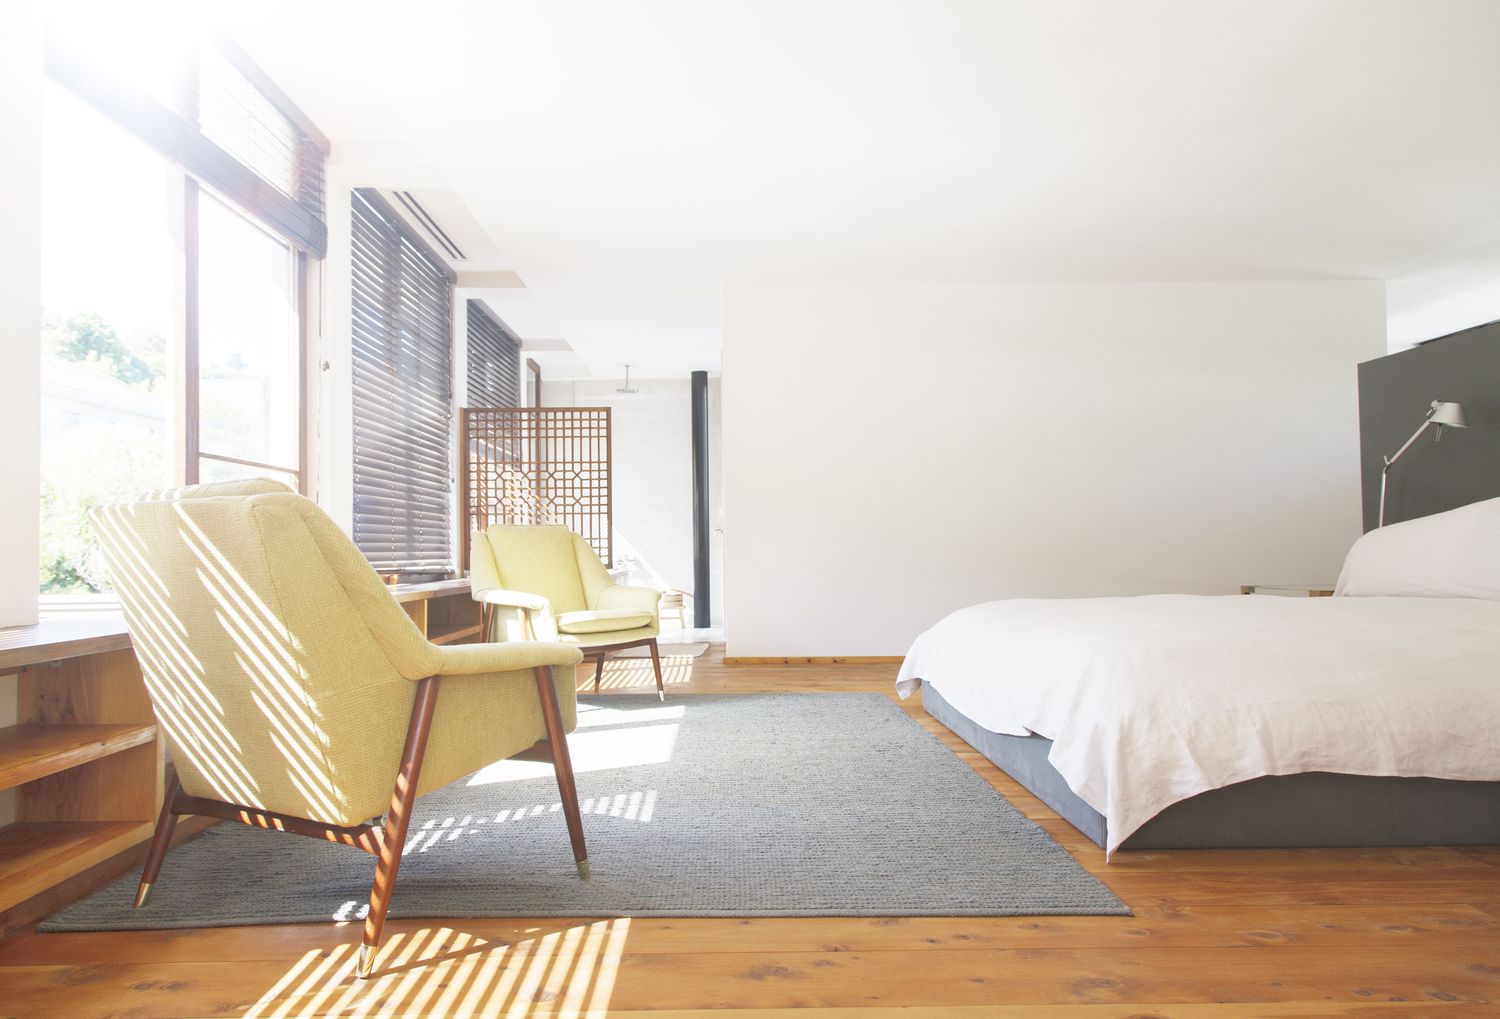 Sillones, alfombra y cama en dormitorio moderno